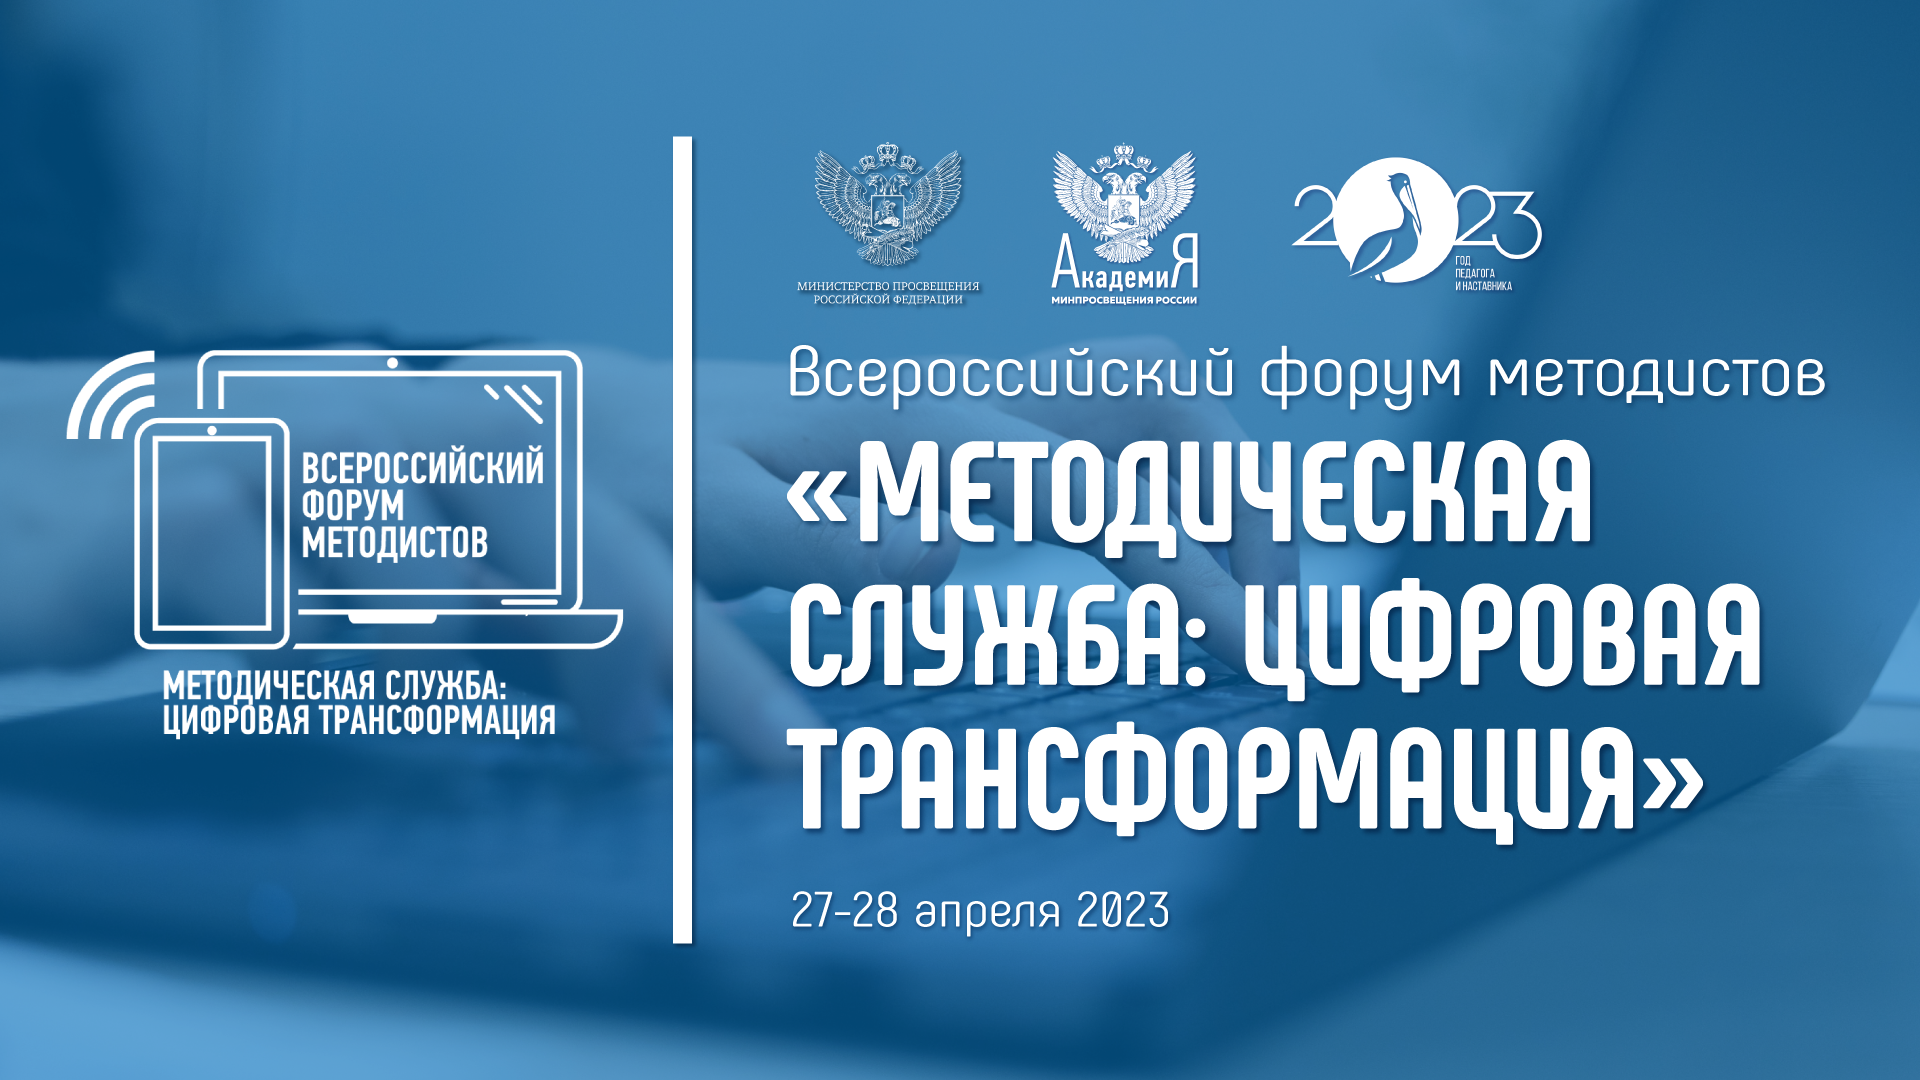 Всероссийский форум «Методическая служба: цифровая трансформация» пройдет в Москве 27-28 апреля